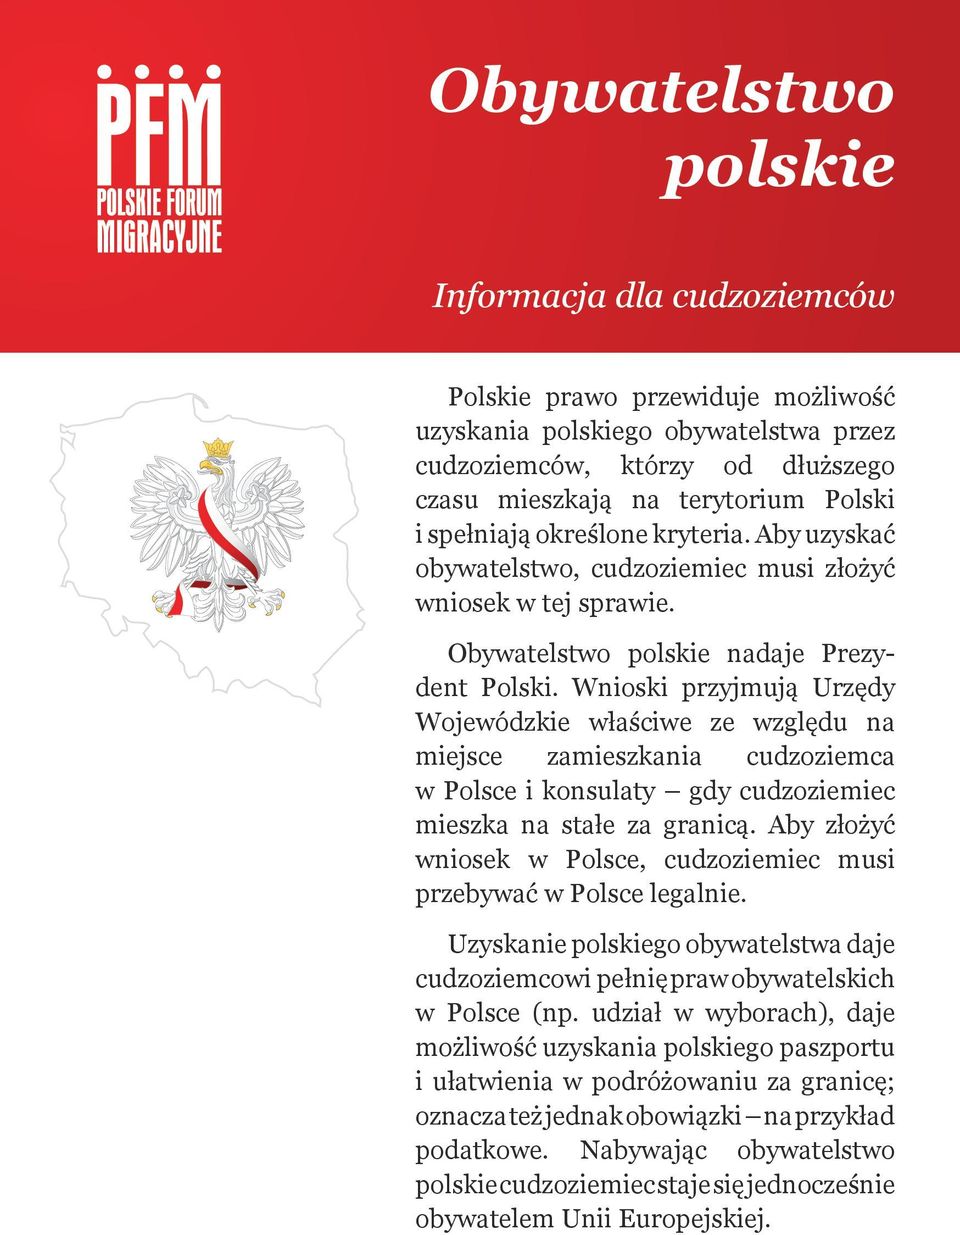 Wnioski przyjmują Urzędy Wojewódzkie właściwe ze względu na miejsce zamieszkania cudzoziemca w Polsce i konsulaty gdy cudzoziemiec mieszka na stałe za granicą.